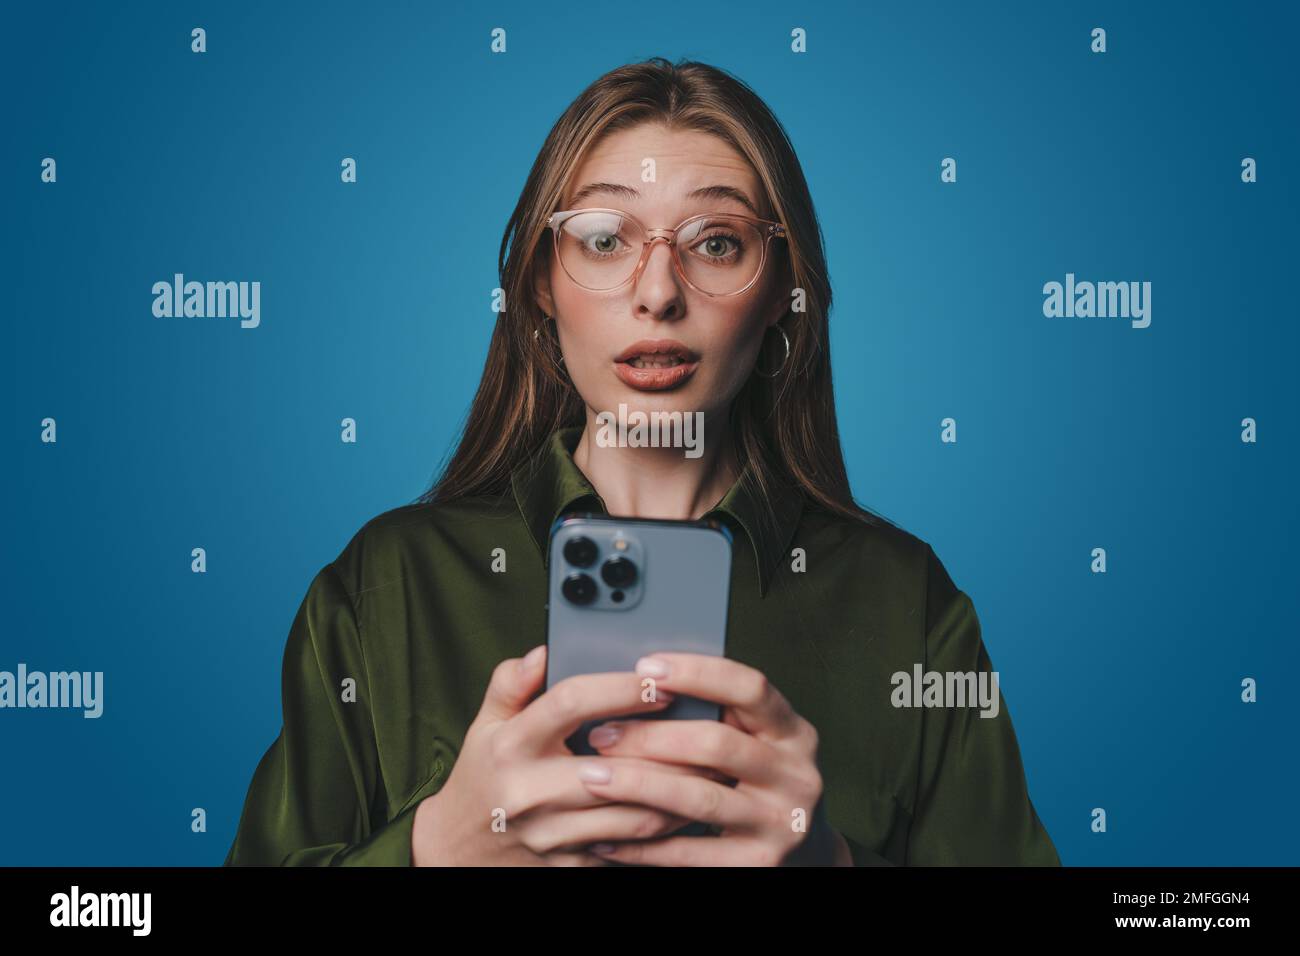 Une femme choquée qui réagit à un sms frustrant sur un téléphone portable, se plaignant du texte d'un smartphone, debout sur fond bleu. Banque D'Images